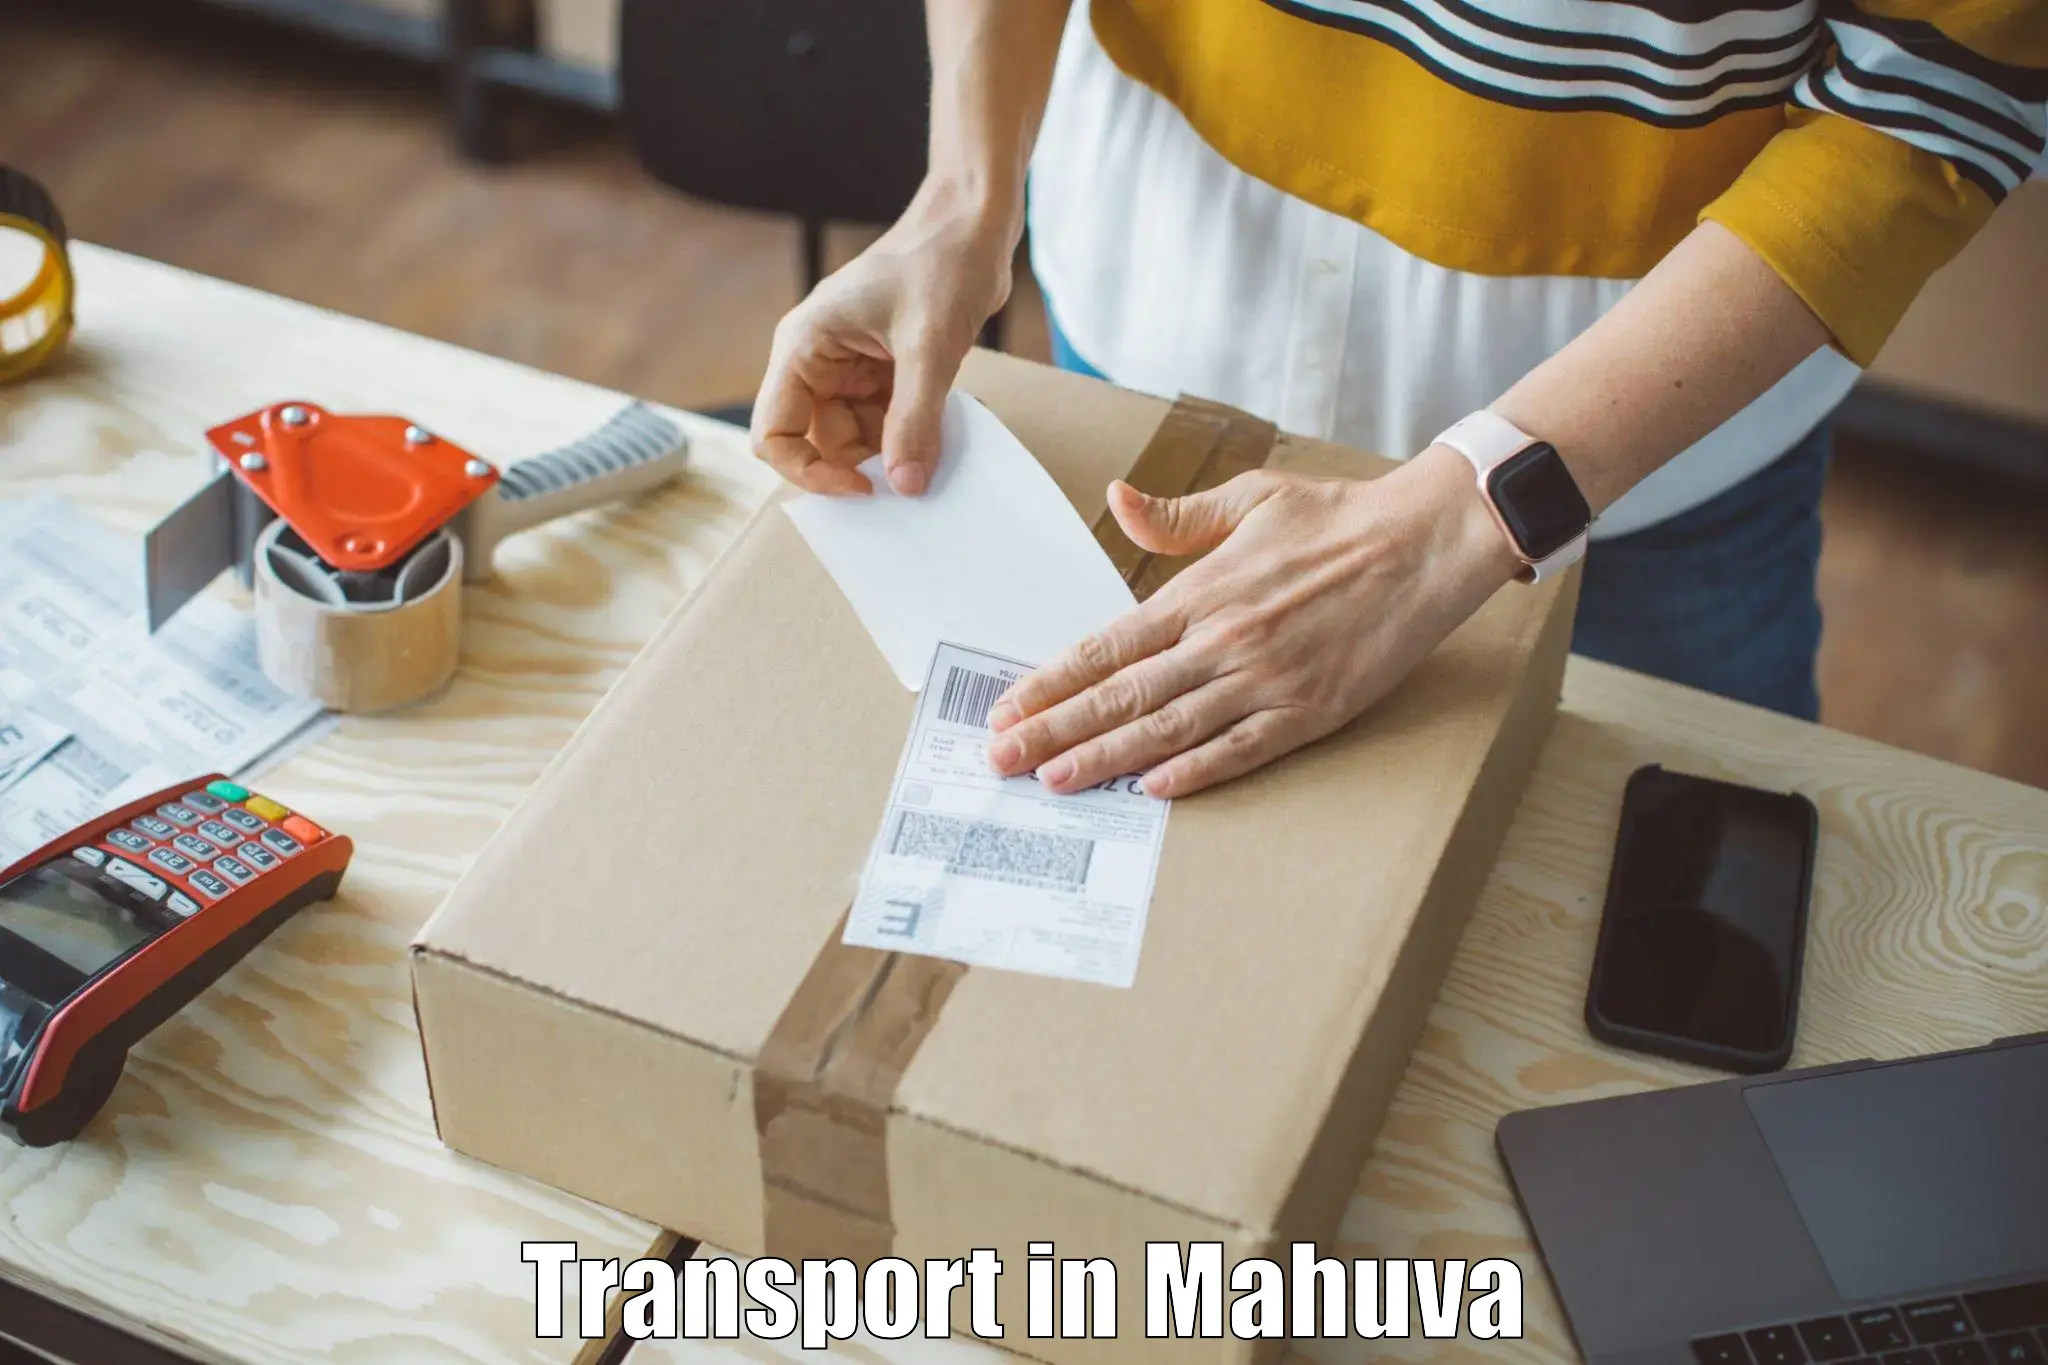 Online transport service in Mahuva